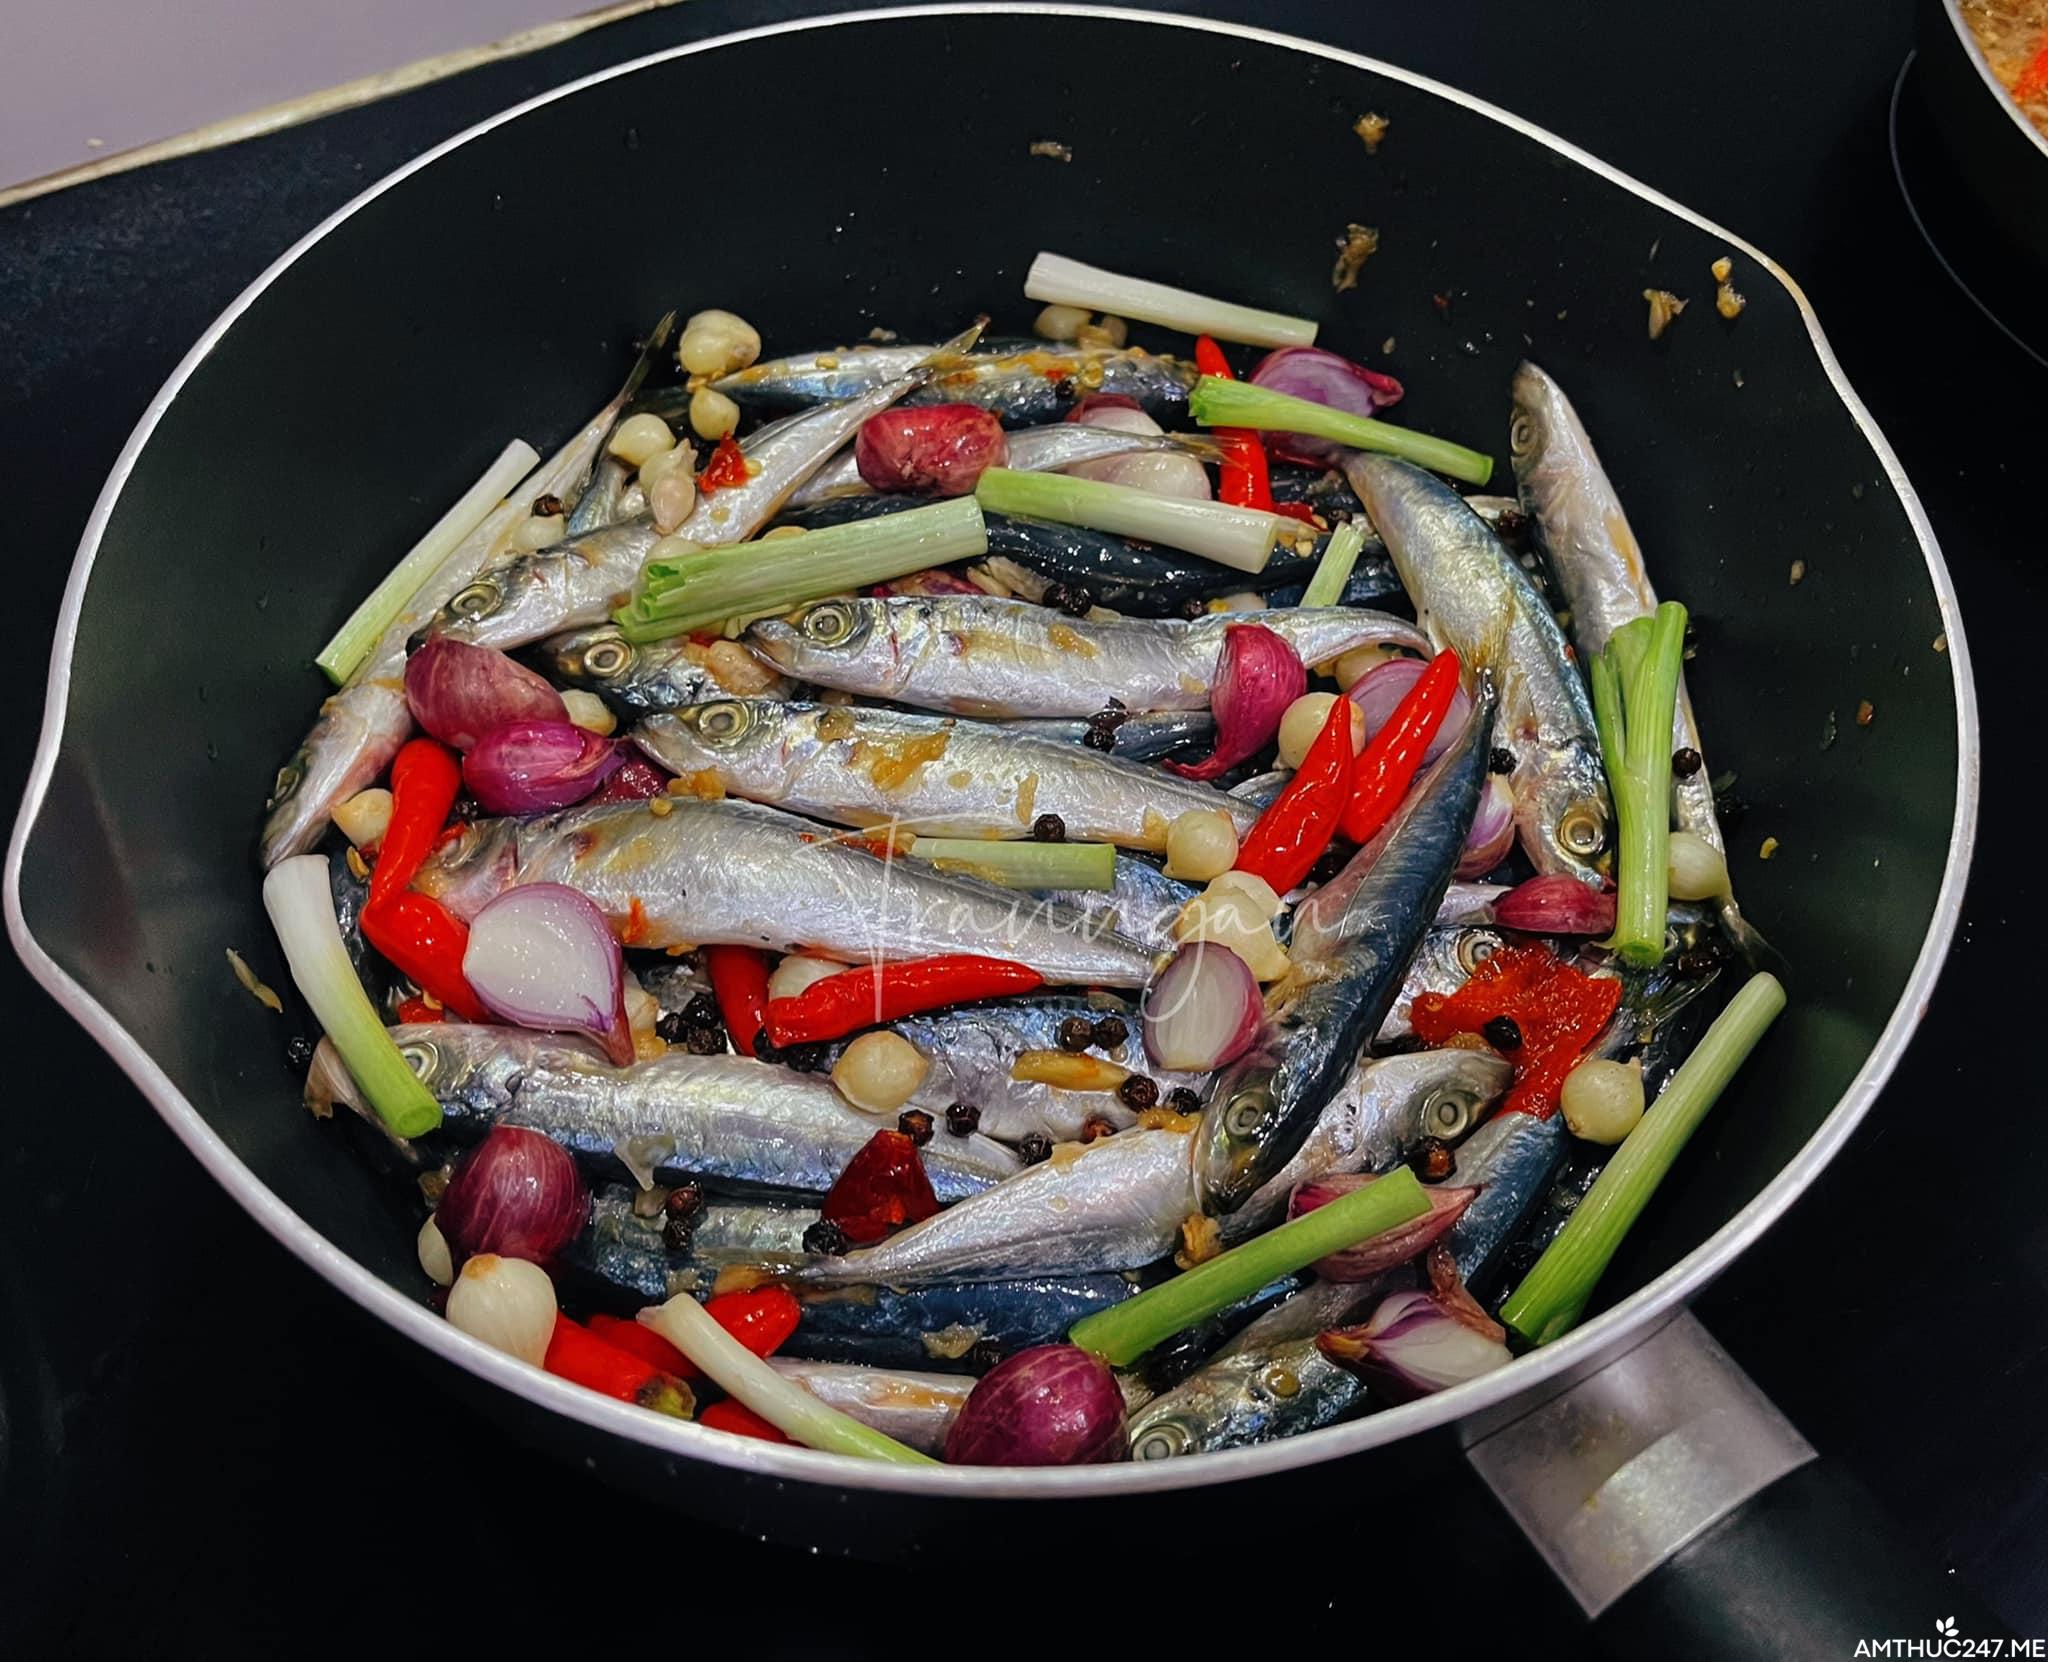 Hướng dẫn cách làm cá nục kho nước dừa cực hao cơm - Thực đơn hàng ngày Món ngon mỗi ngày 